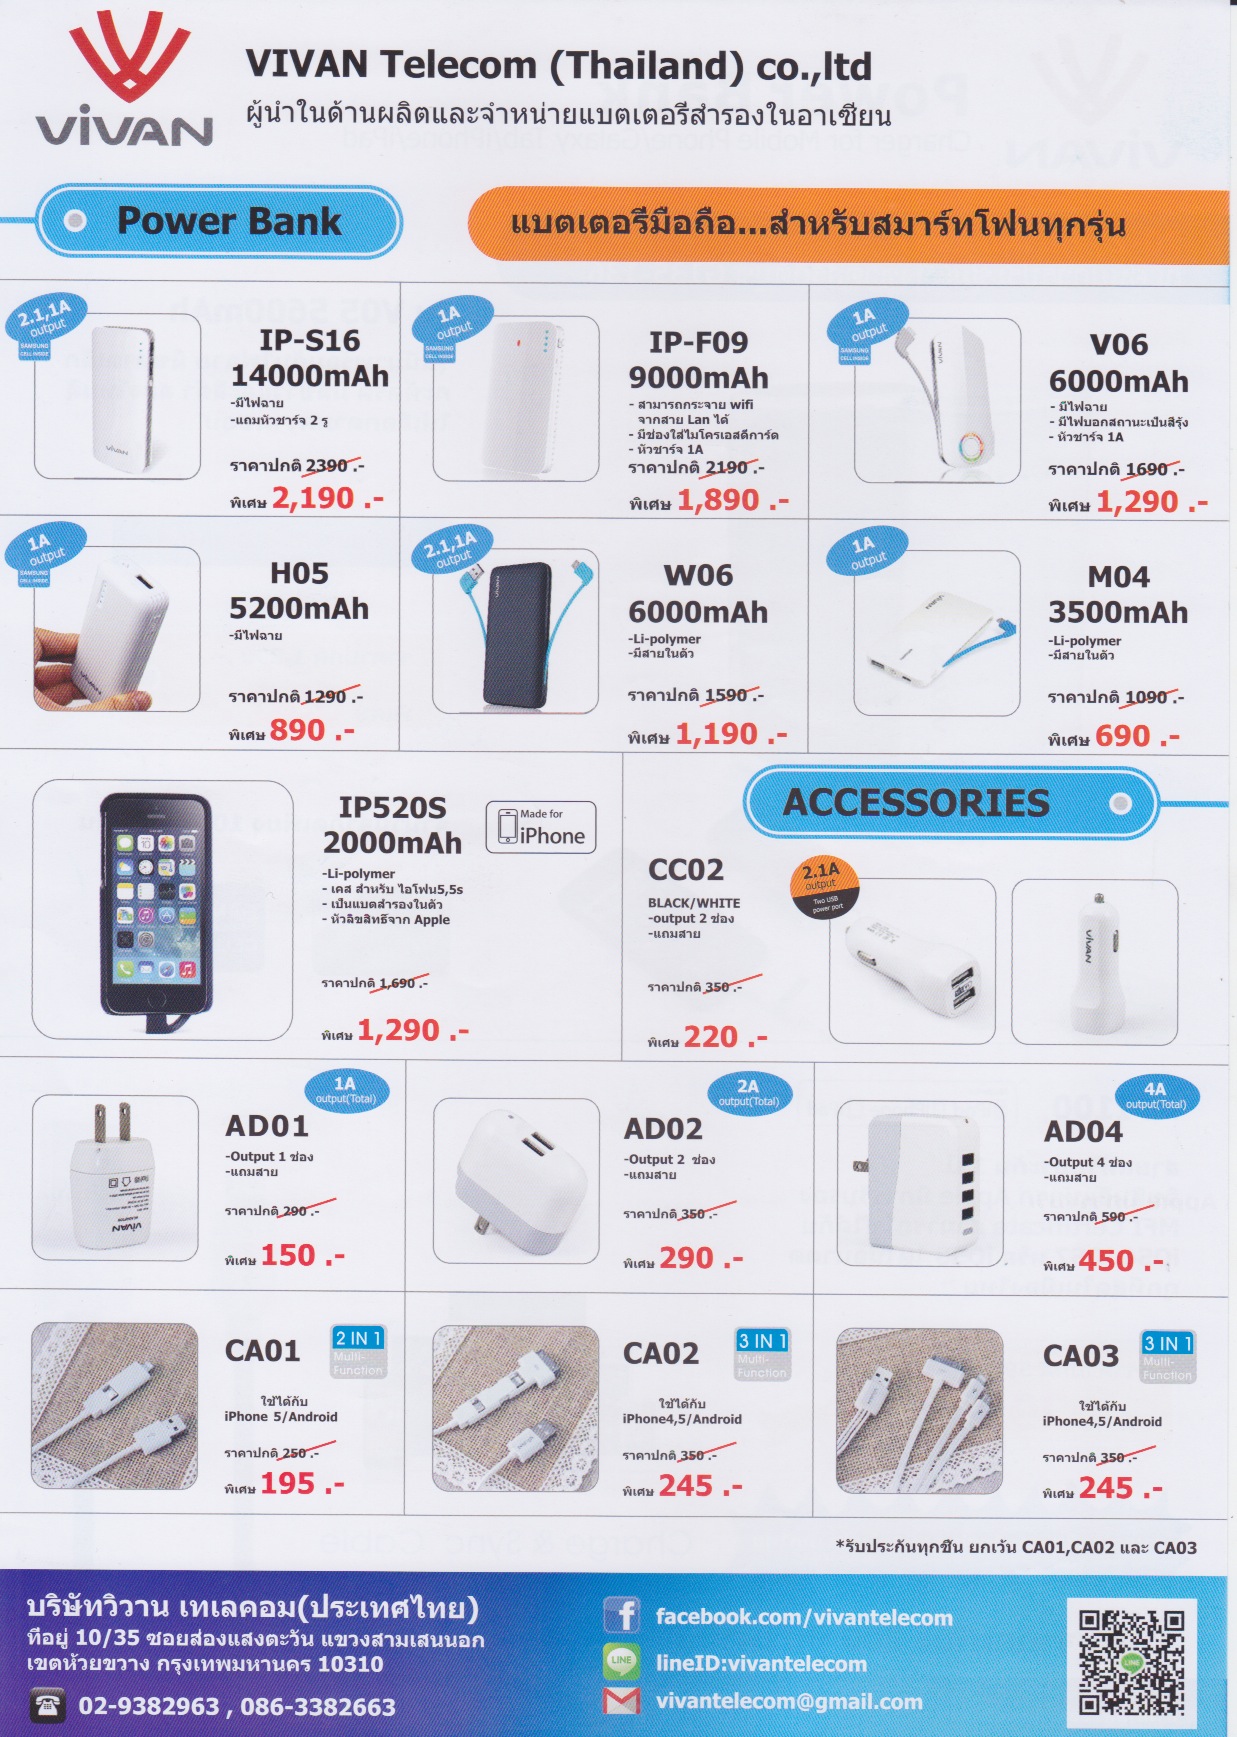 รวมโบรชัวร์โปรโมชันจากงาน Commart Thailand Summer Sale 2014 กลุ่มมือถือ แท็บเล็ตและอุปกรณ์เสริม